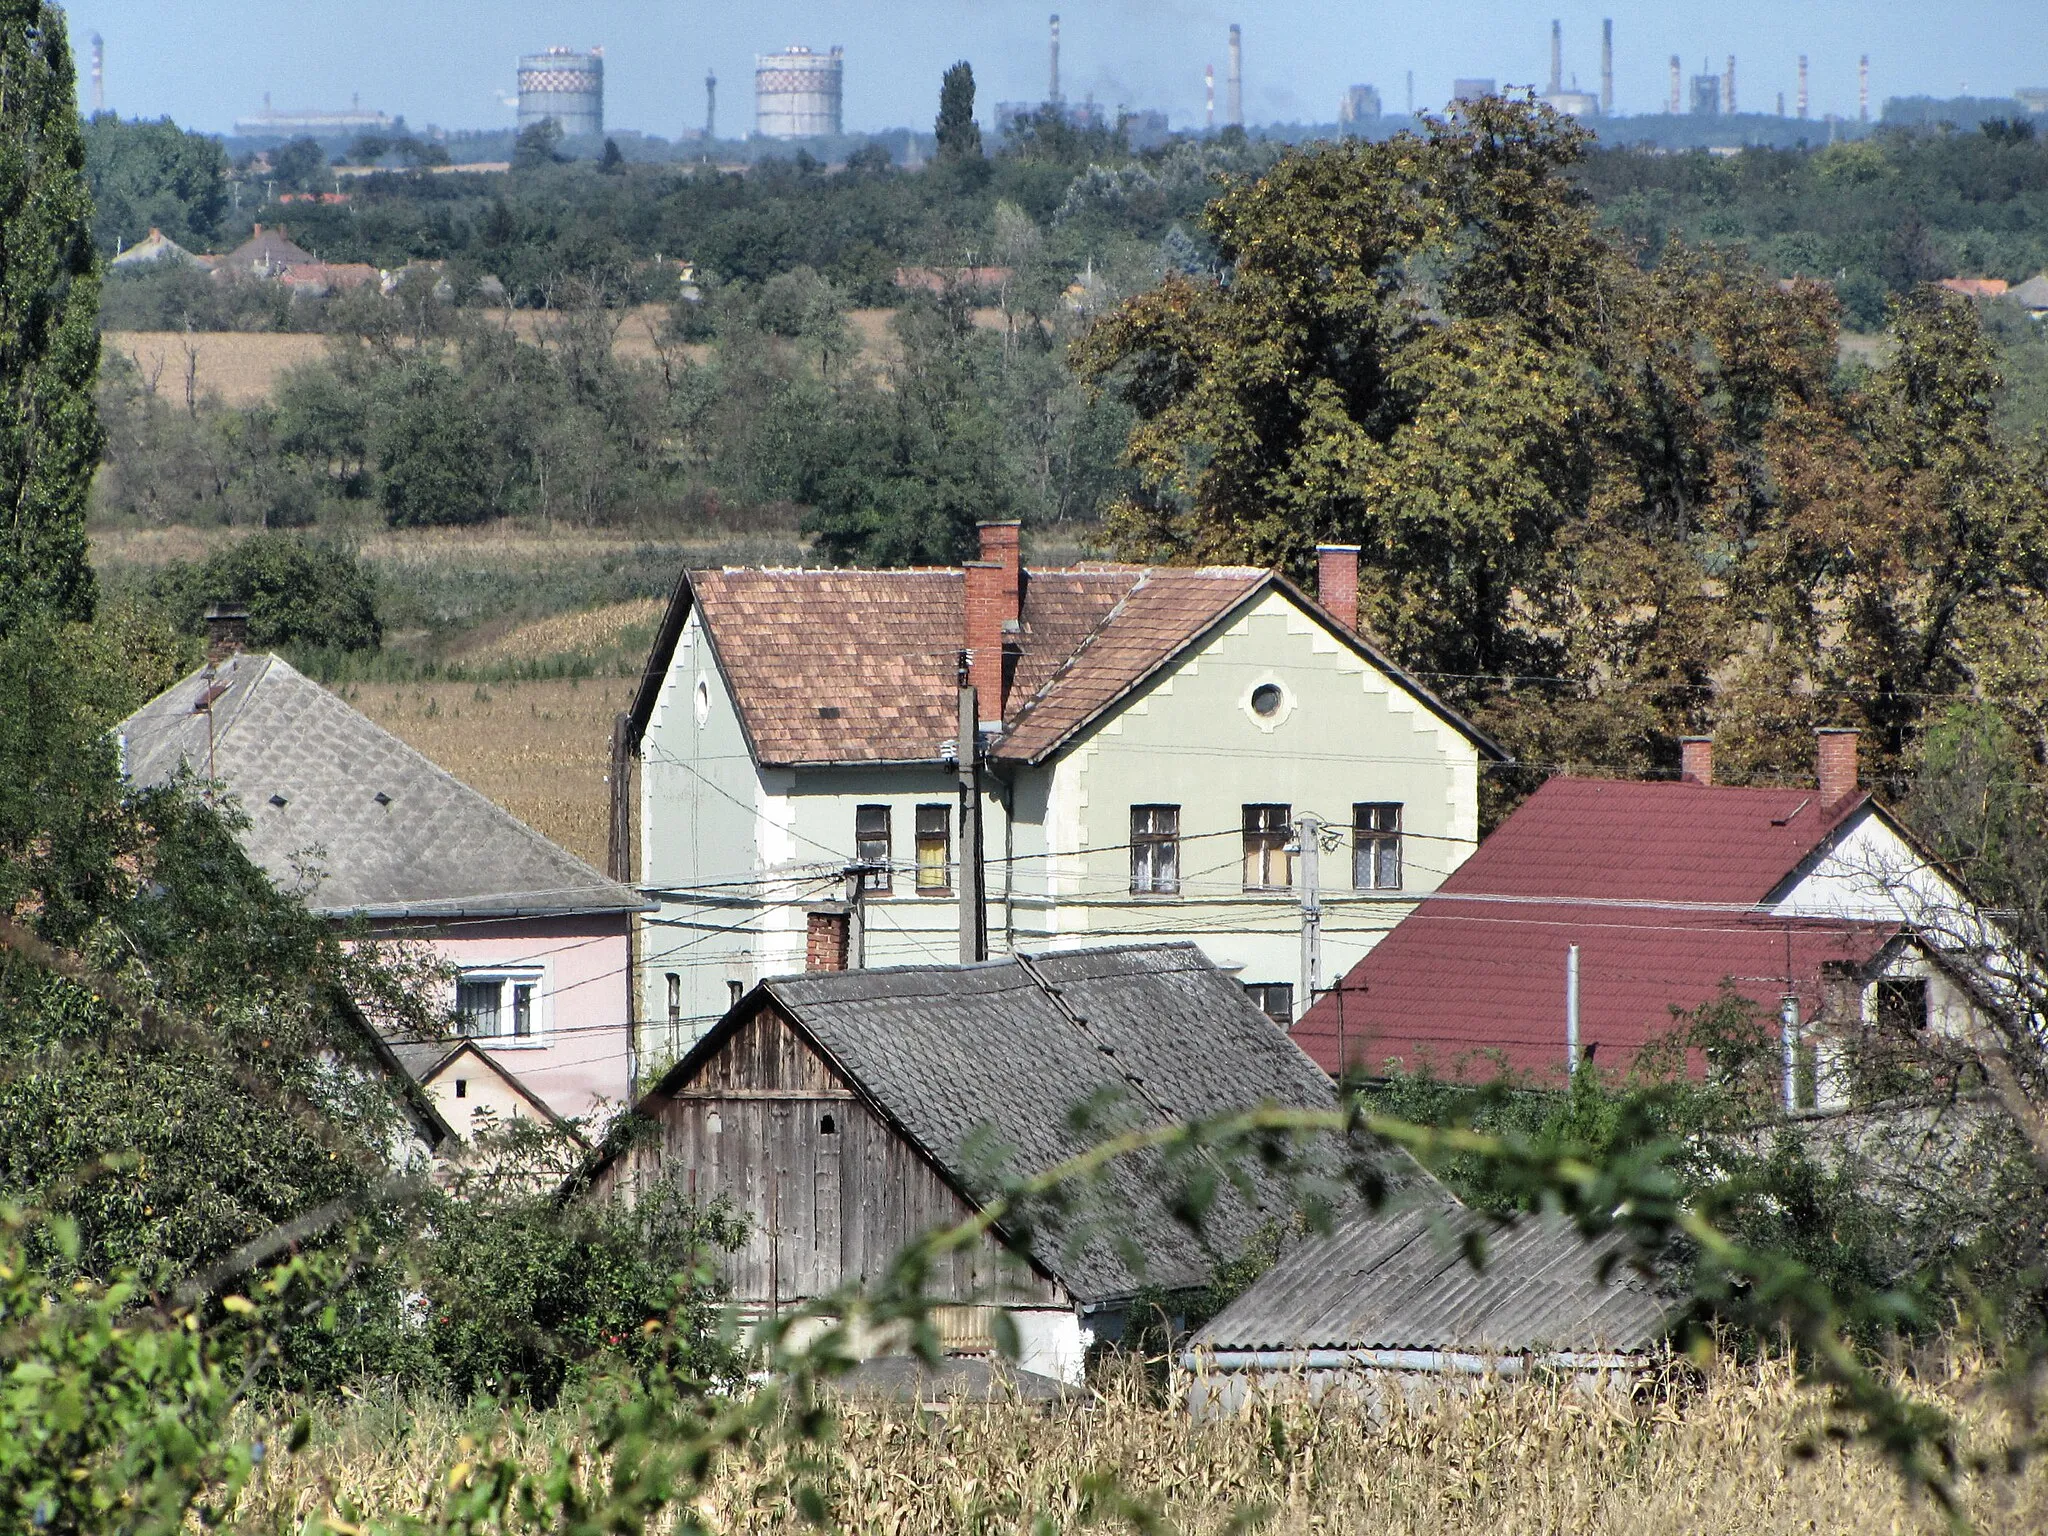 Photo showing: Előszállás, train station. Dunaújváros in the background.